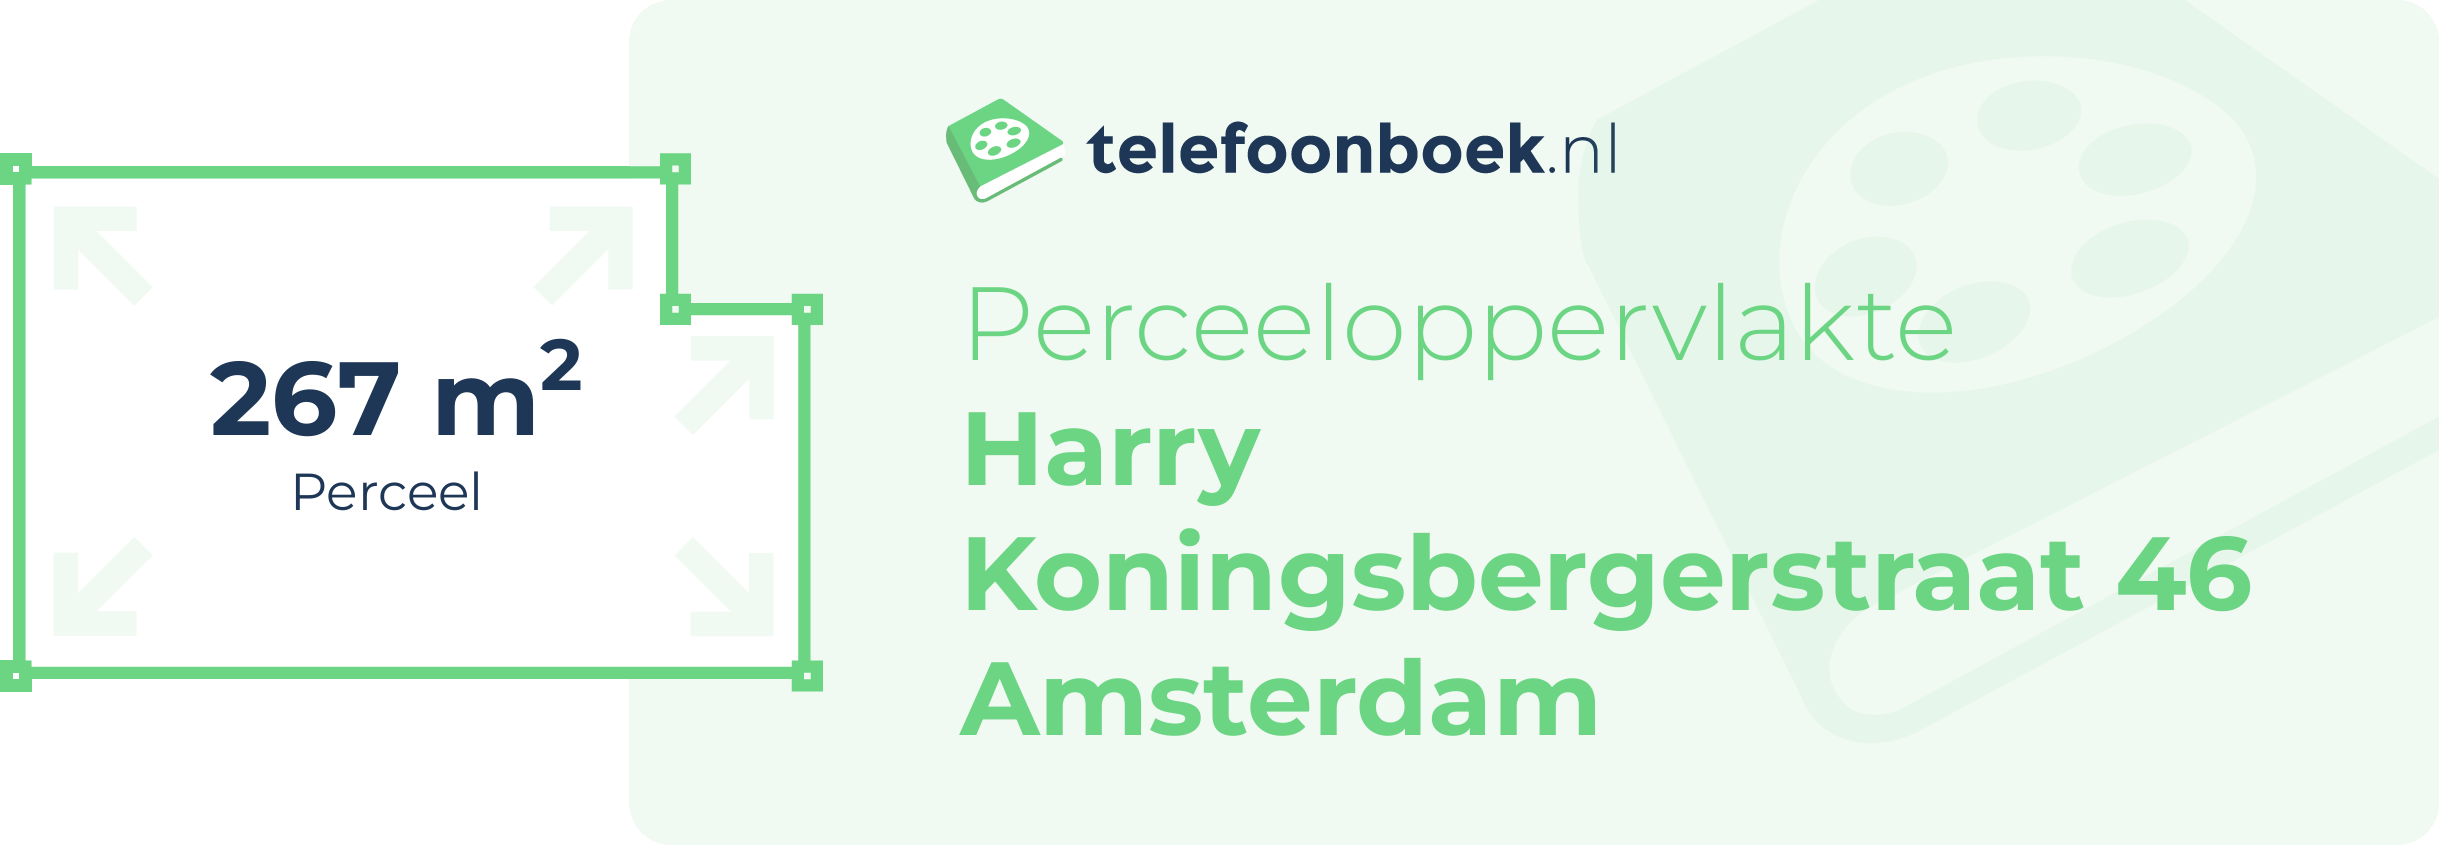 Perceeloppervlakte Harry Koningsbergerstraat 46 Amsterdam